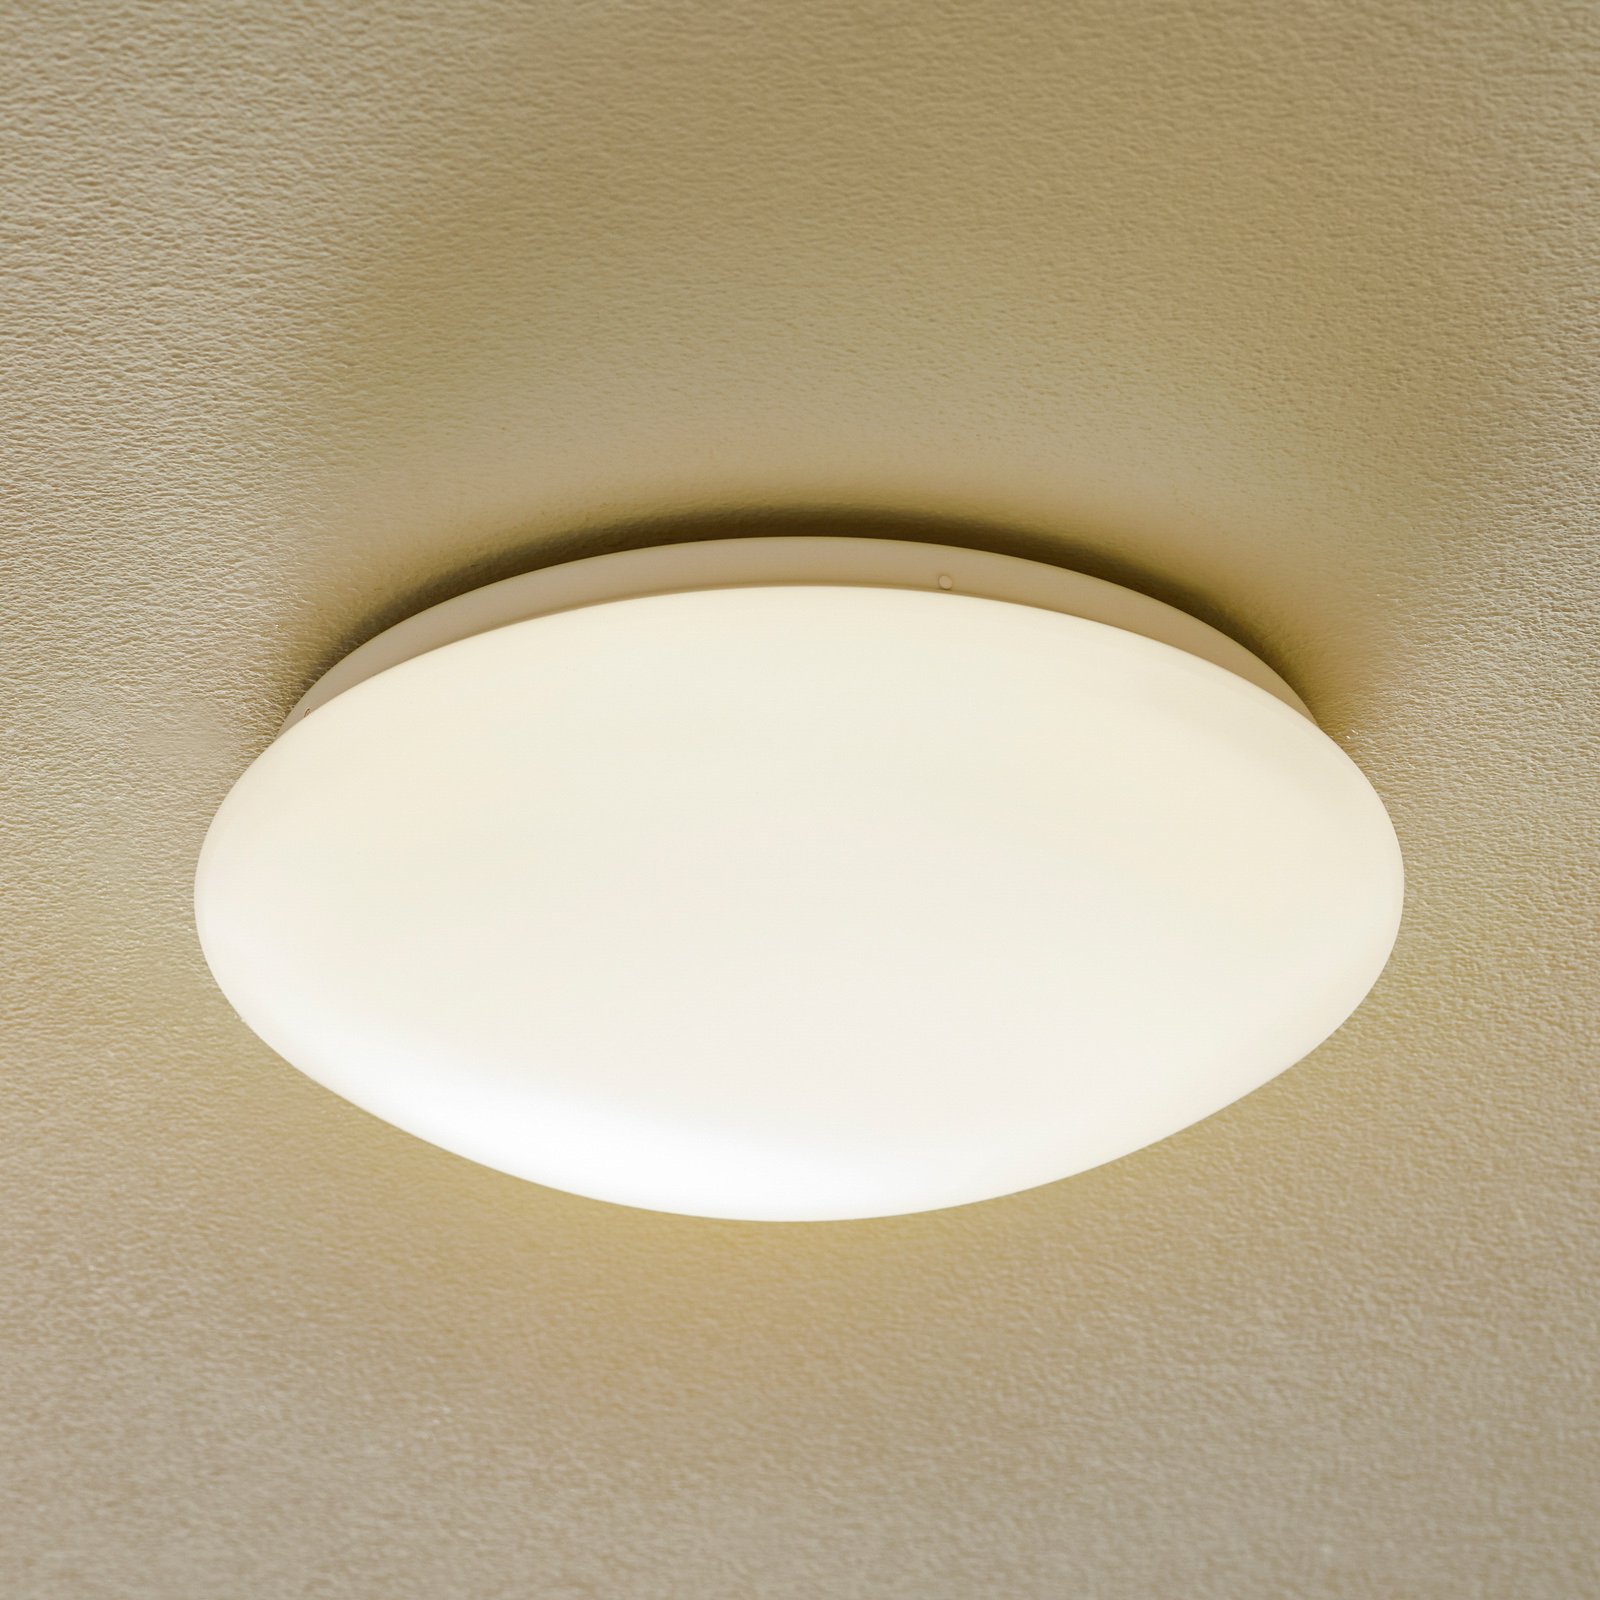 Paulmann Leonis LED-taklampa 3 000 K, Ø 28 cm